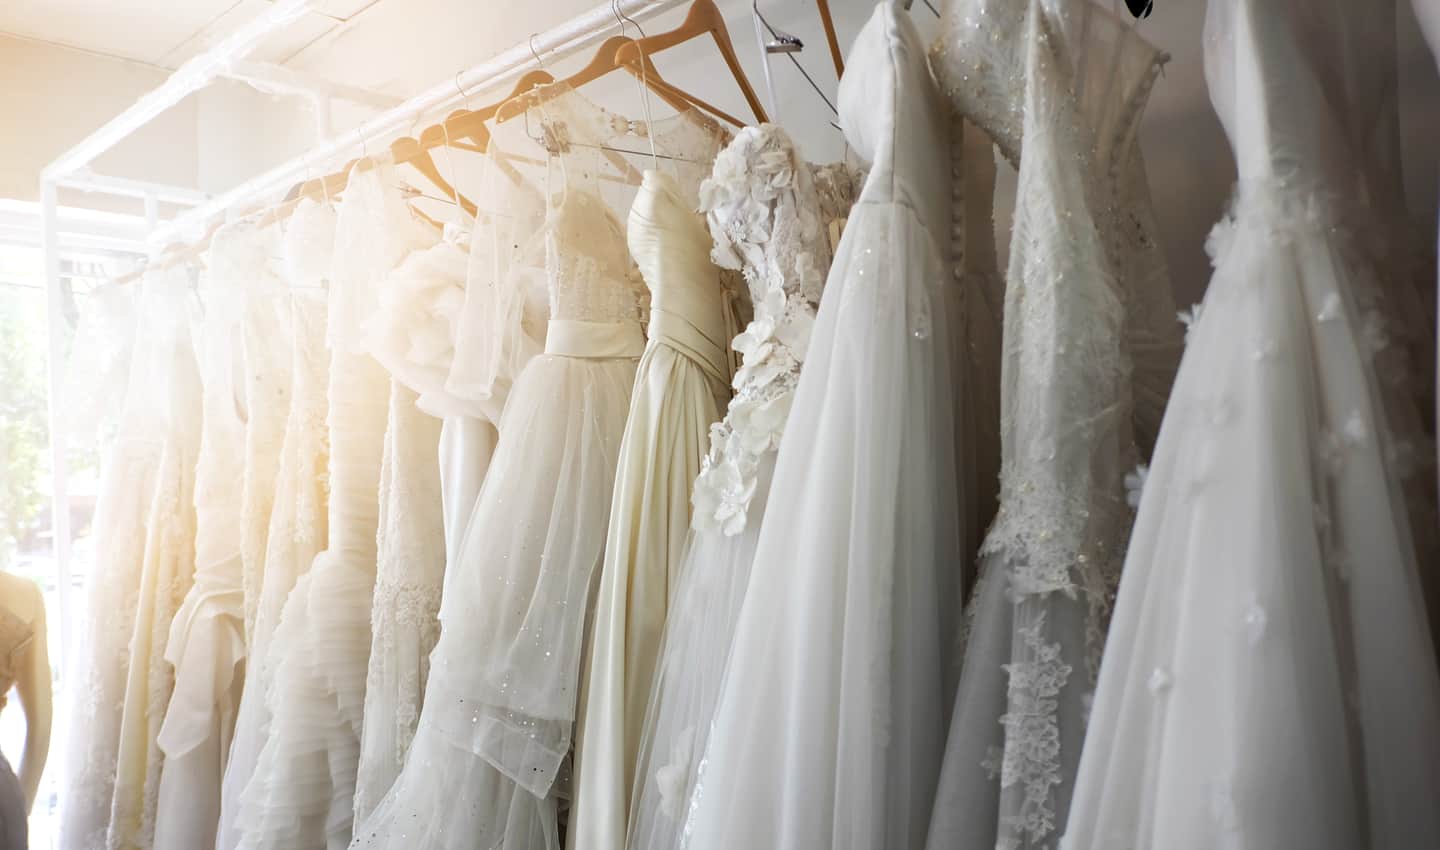  5 cele mai bune locuri pentru a vinde rochii de mireasă online